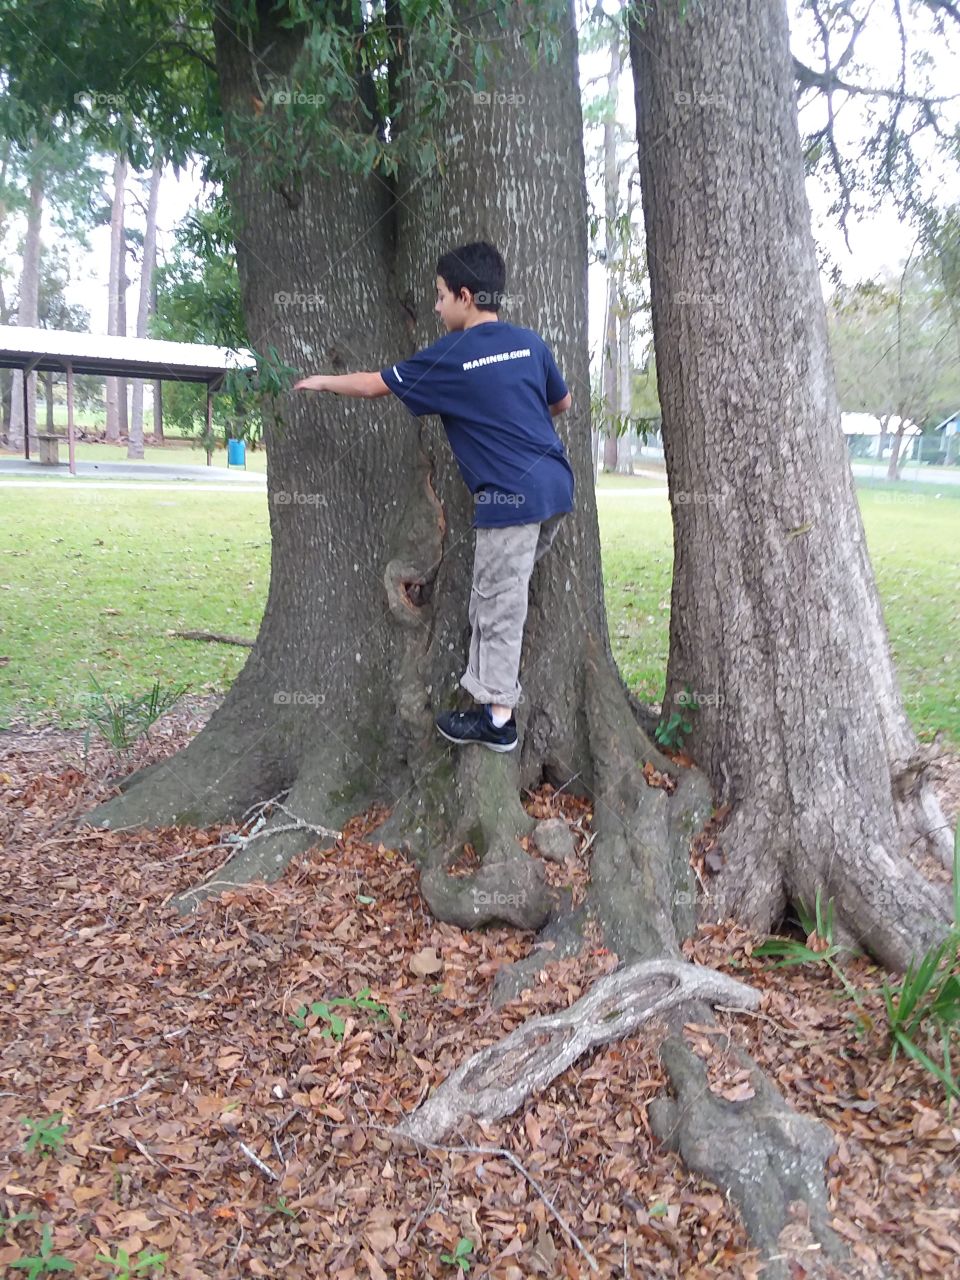 climbing a tree the right way